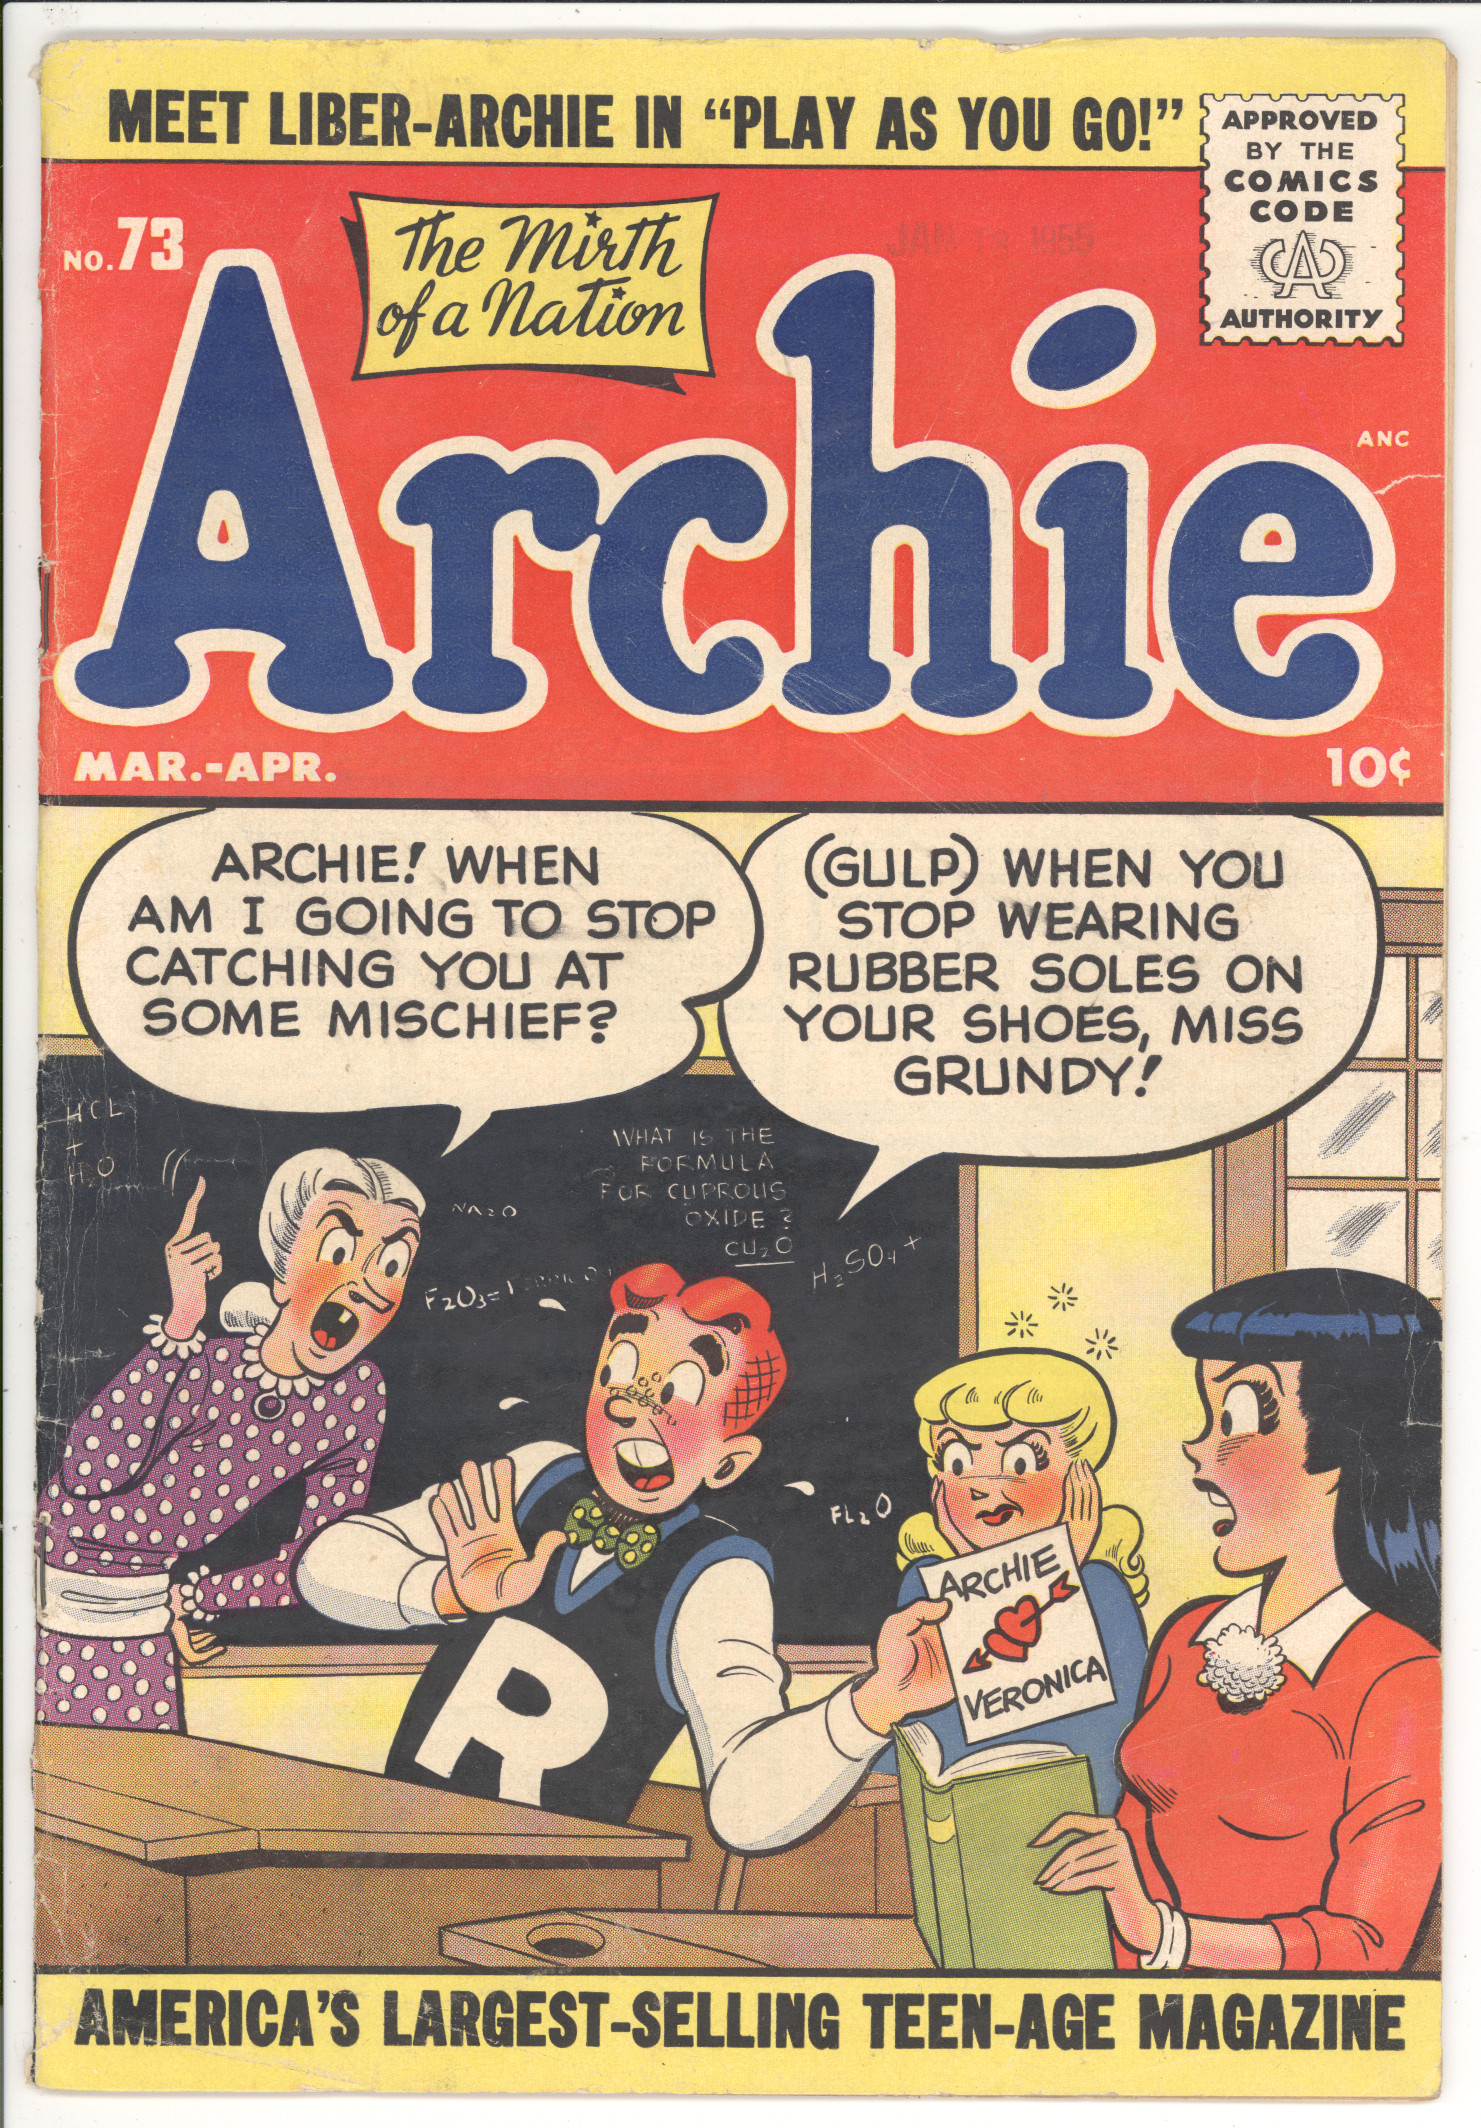 Archie Comics #73 front